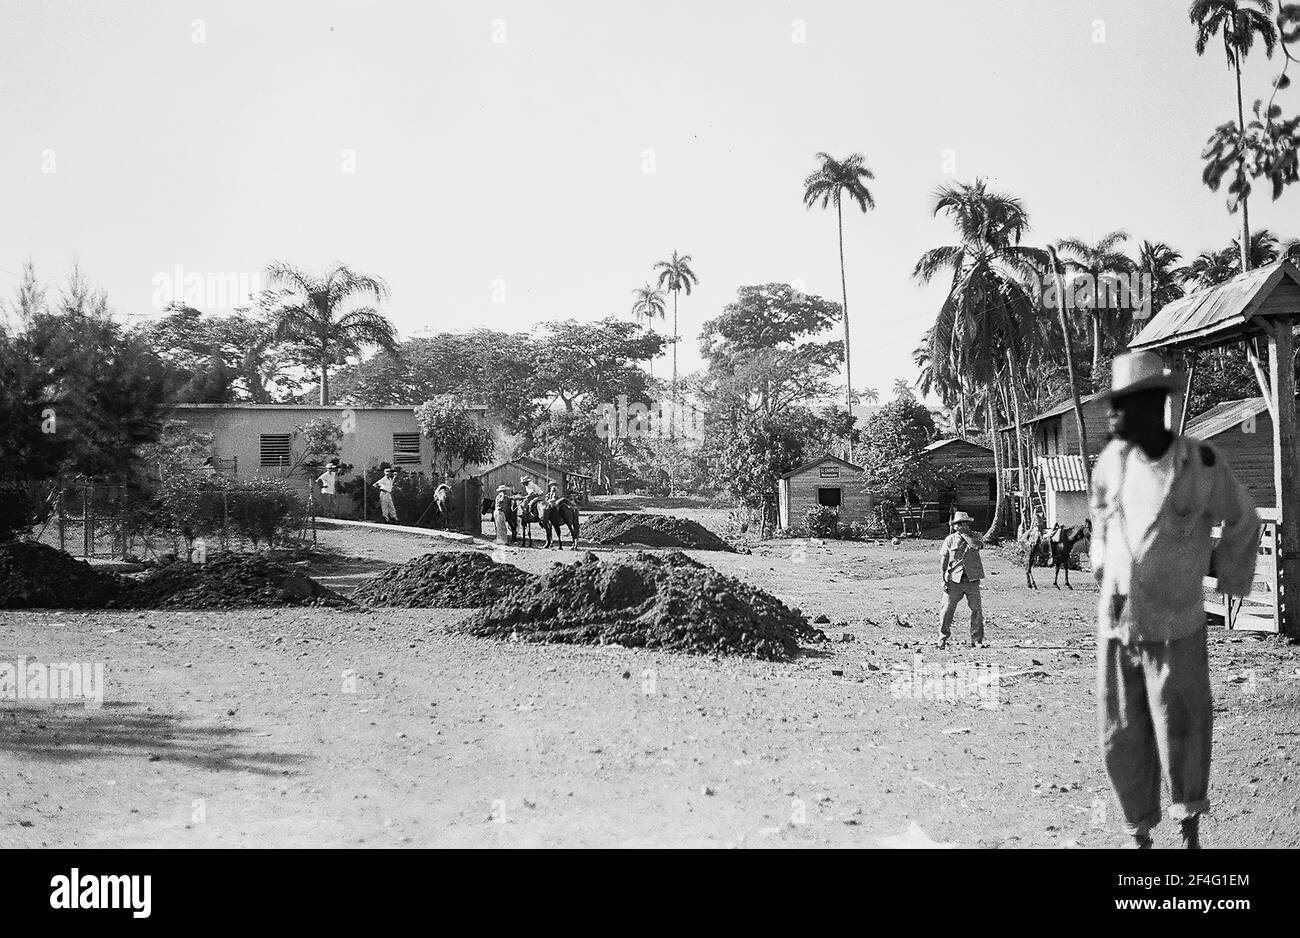 Les gens se trouvent dans un champ avec des débris visibles, Biran, Cuba, province de Holguin, 1963. De la collection de photographies Deena Stryker. () Banque D'Images